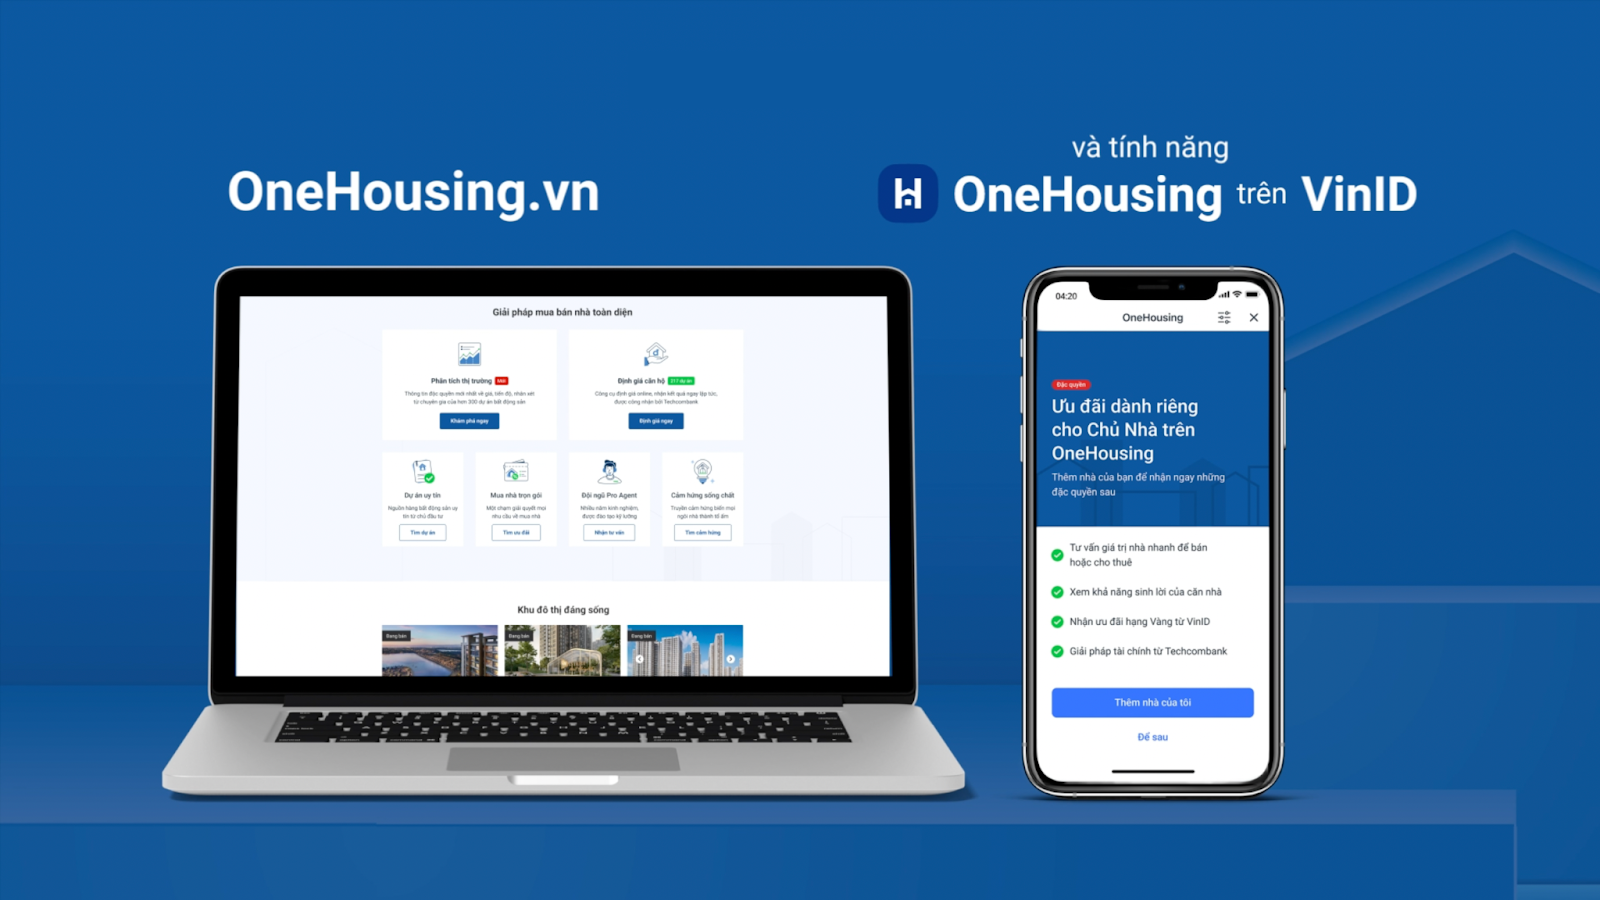 Người dùng chỉ cần vài giây để tự định giá căn hộ của mình trên website onehousing.vn hoặc ứng dụng VinID - ở mục tính năng OneHousing